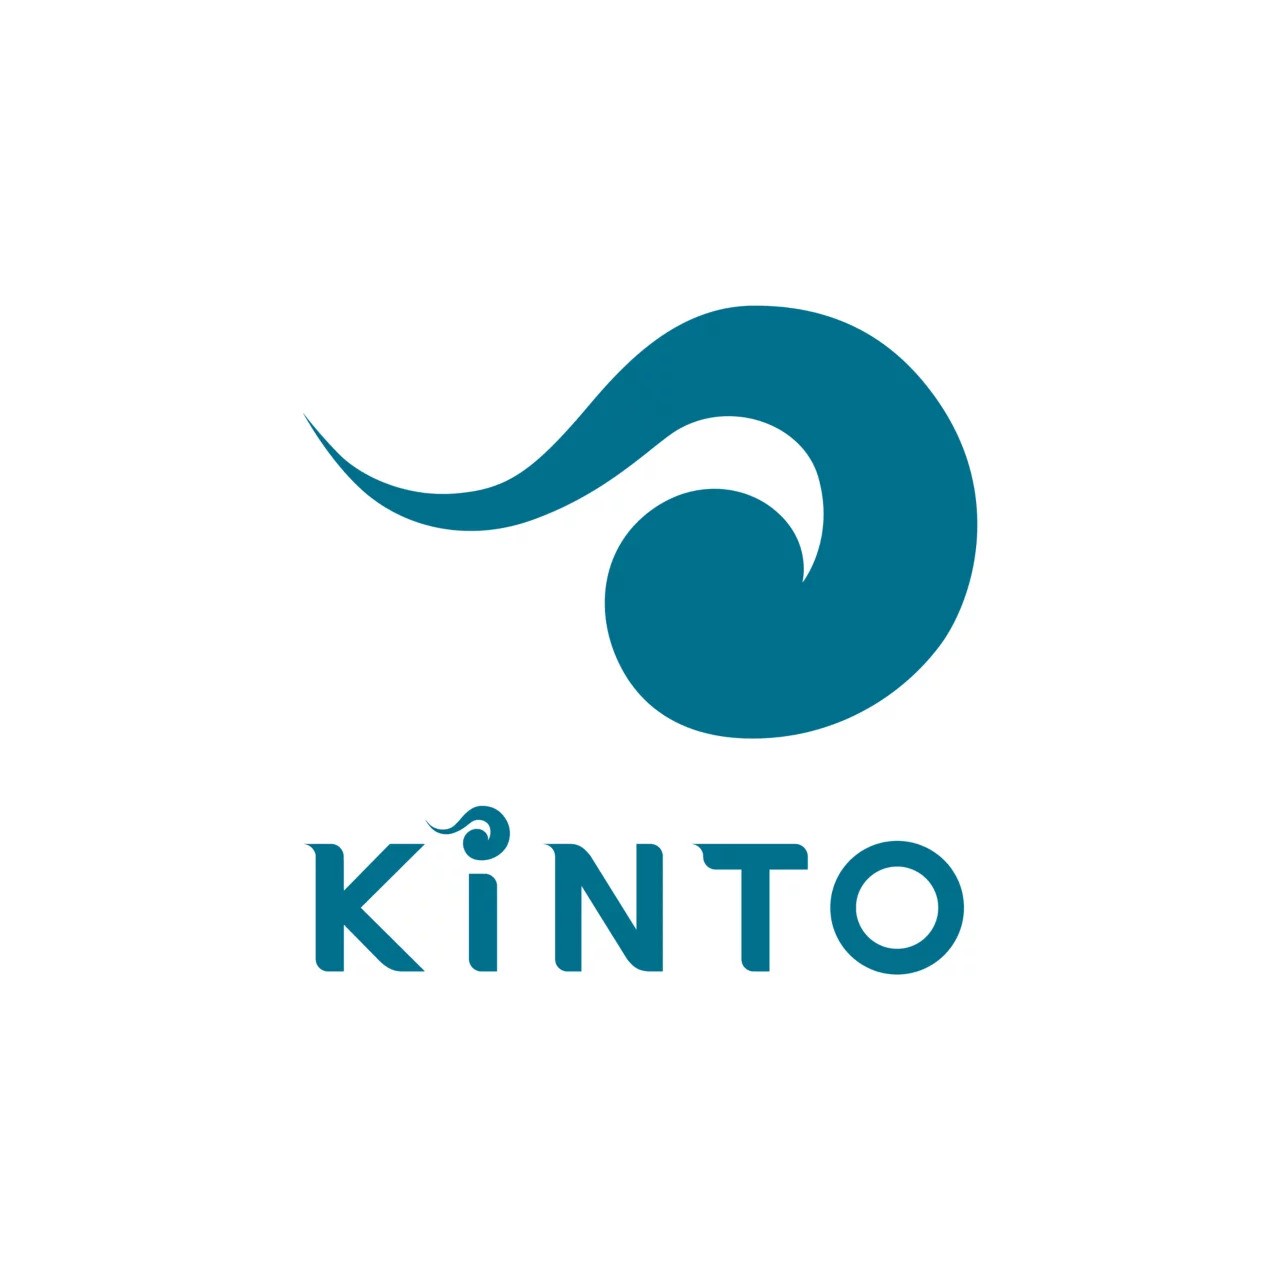 KINTO_logo_04-2-1